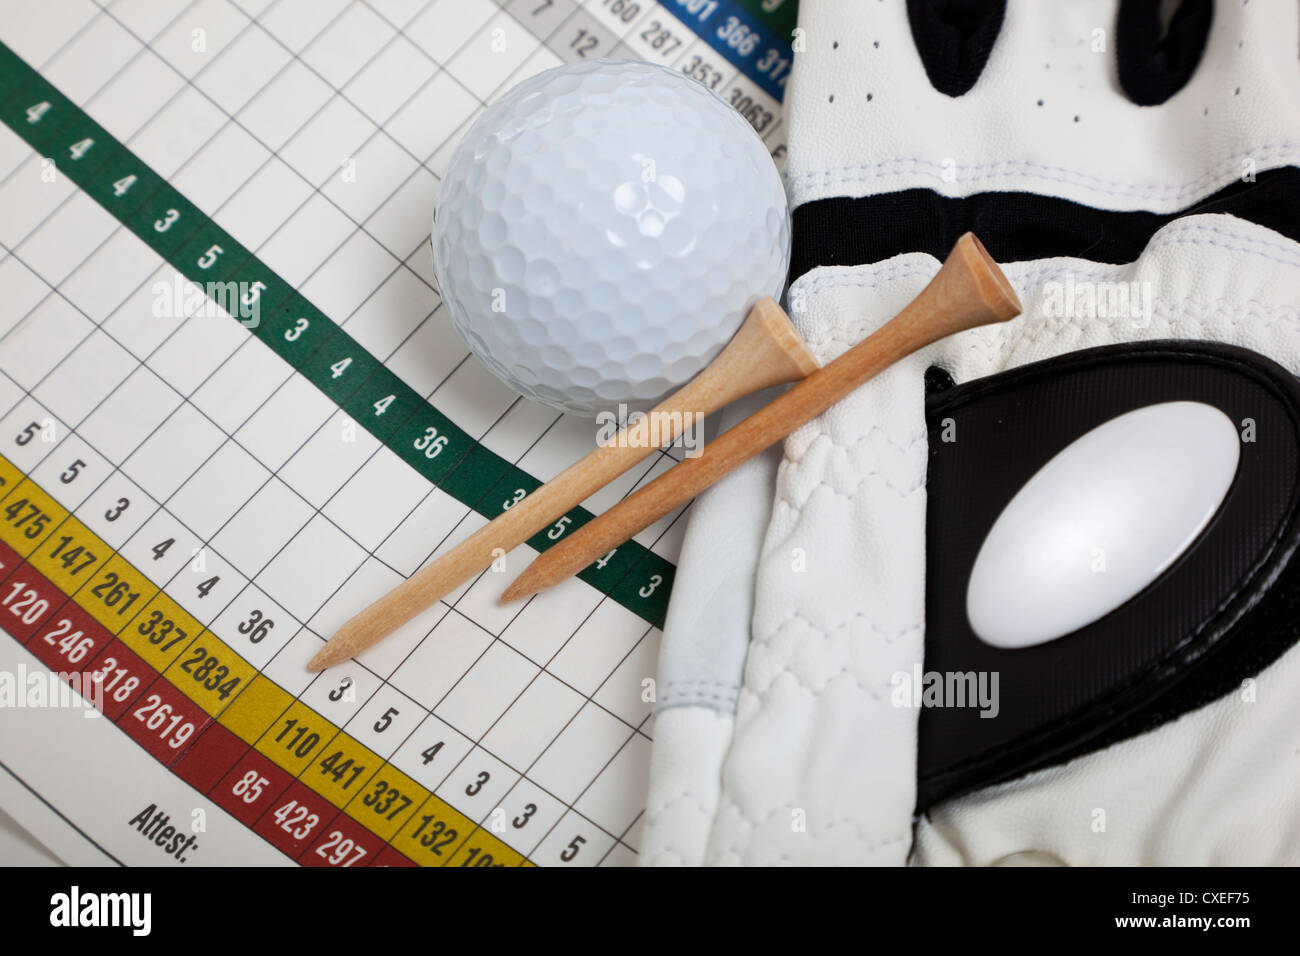 Un chèque en blanc avec bord de golf gant de golf, tees et une balle de golf. Sports nautiques, golf concept Banque D'Images